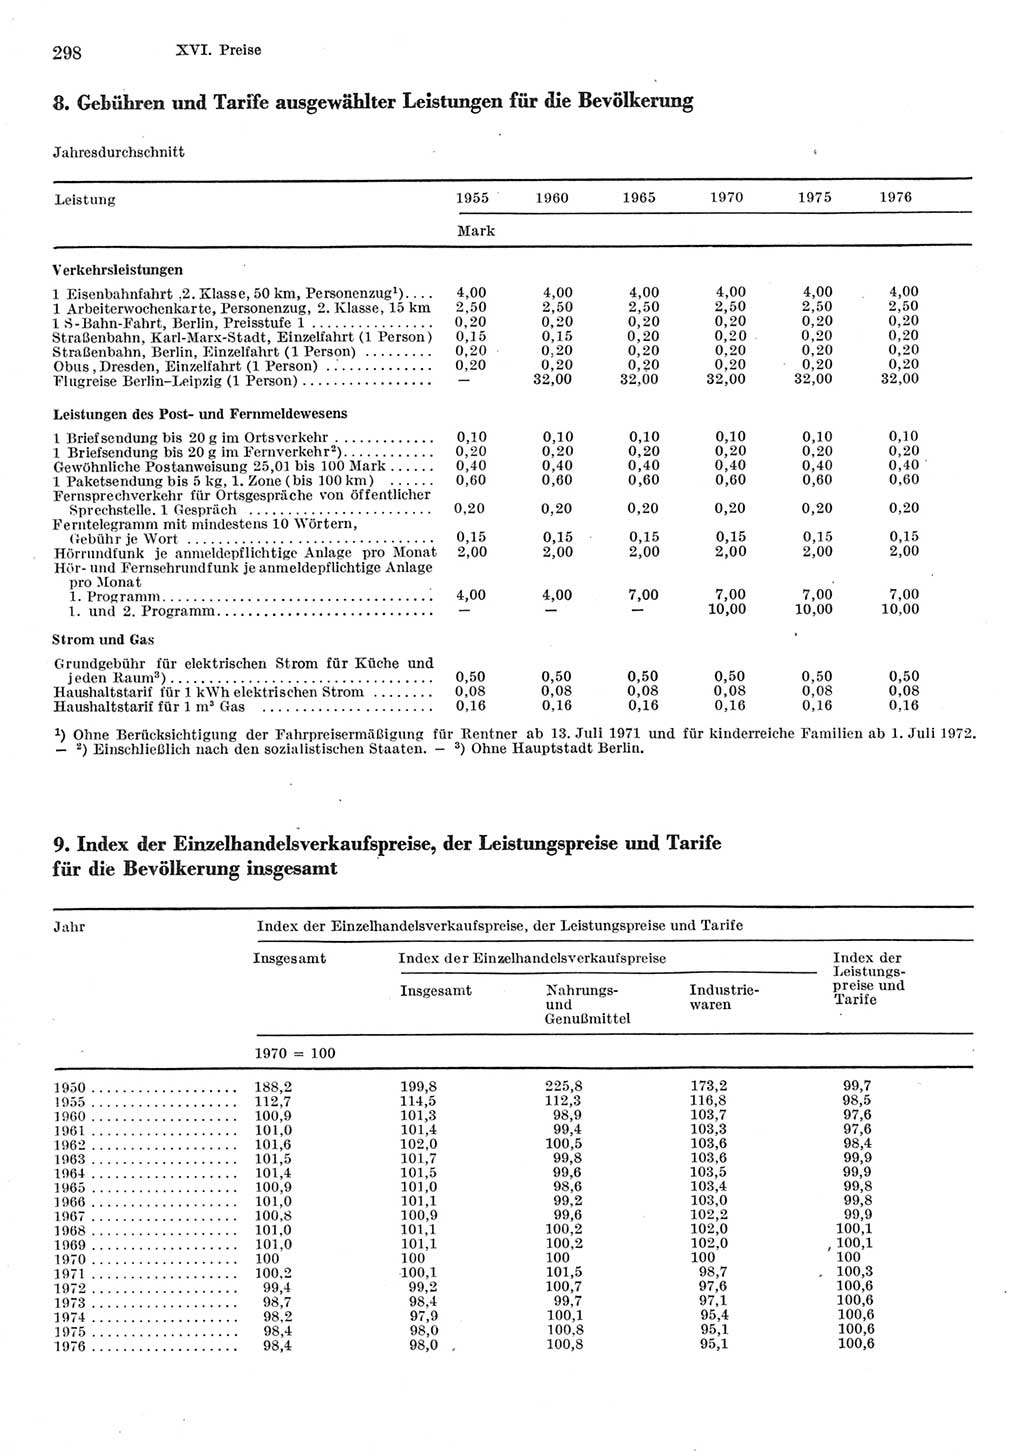 Statistisches Jahrbuch der Deutschen Demokratischen Republik (DDR) 1977, Seite 298 (Stat. Jb. DDR 1977, S. 298)